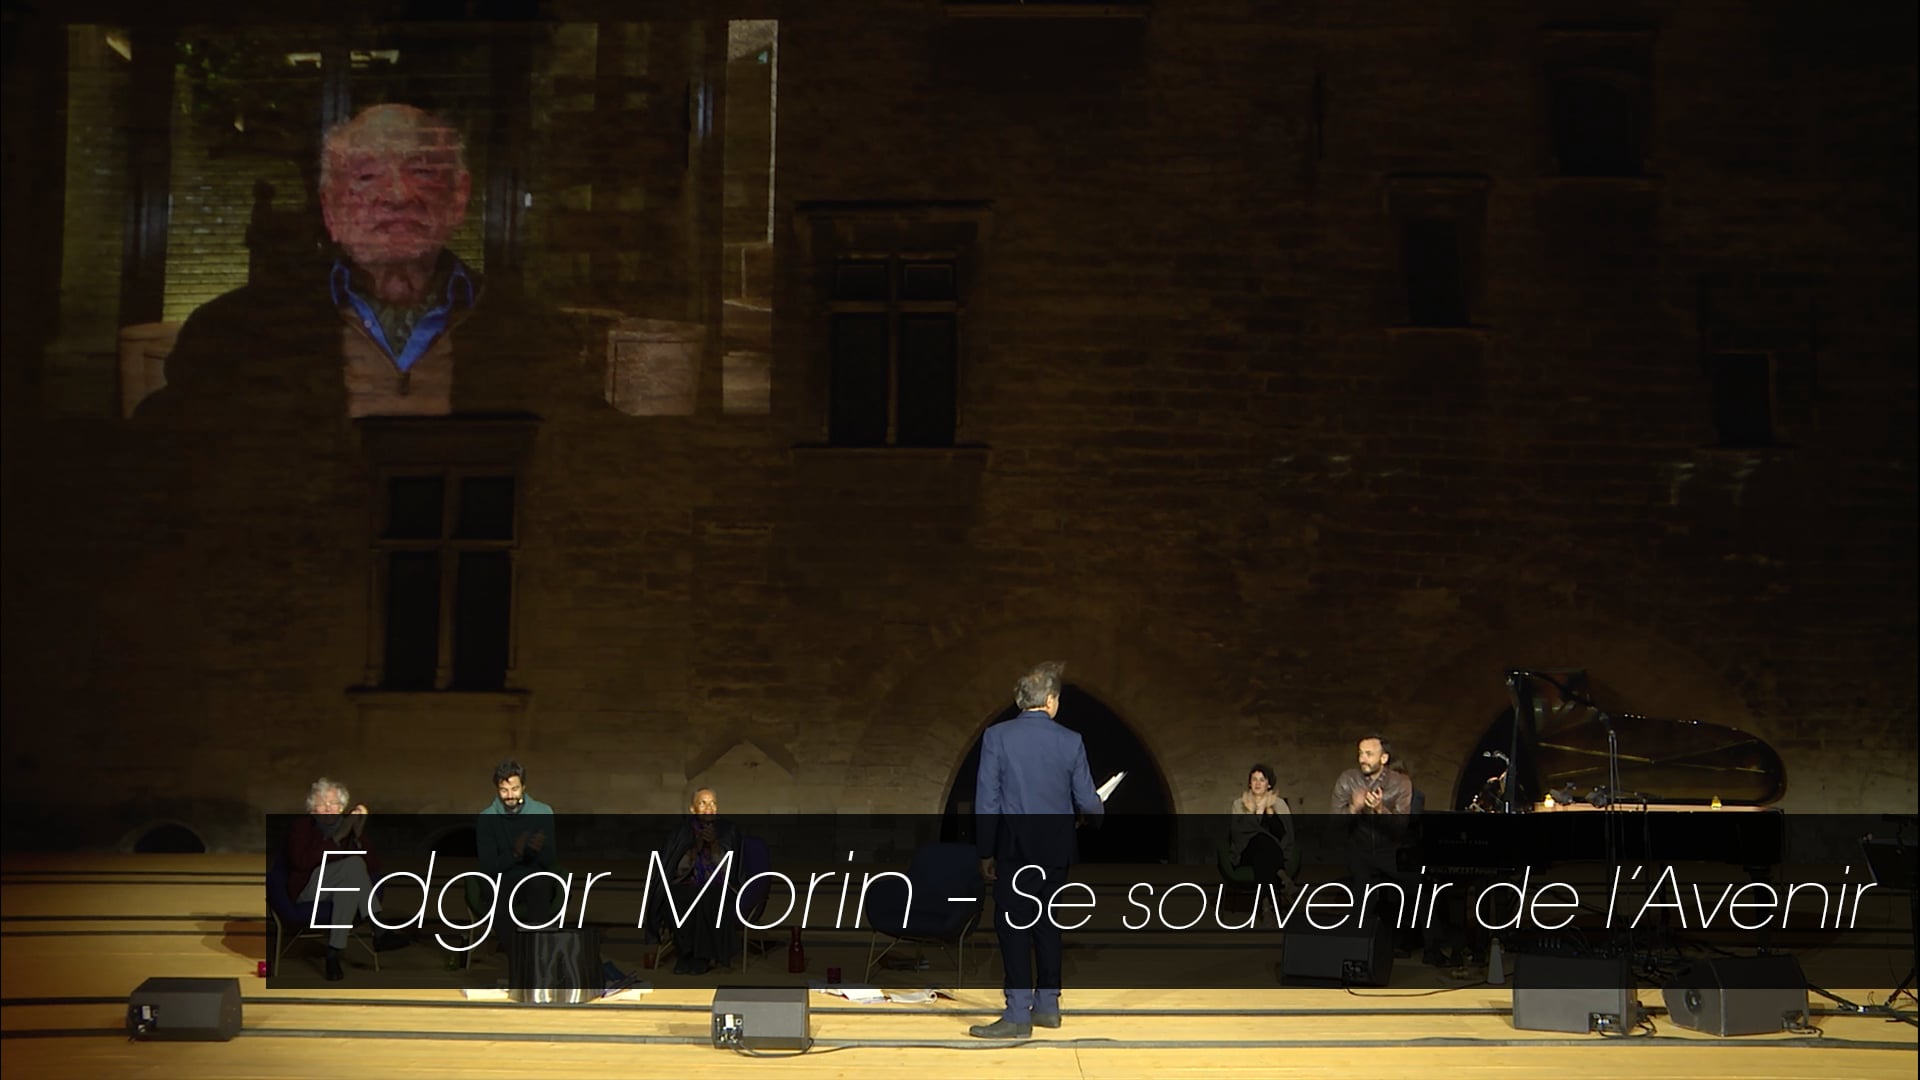 Edgar Morin – Se souvenir de l’avenir